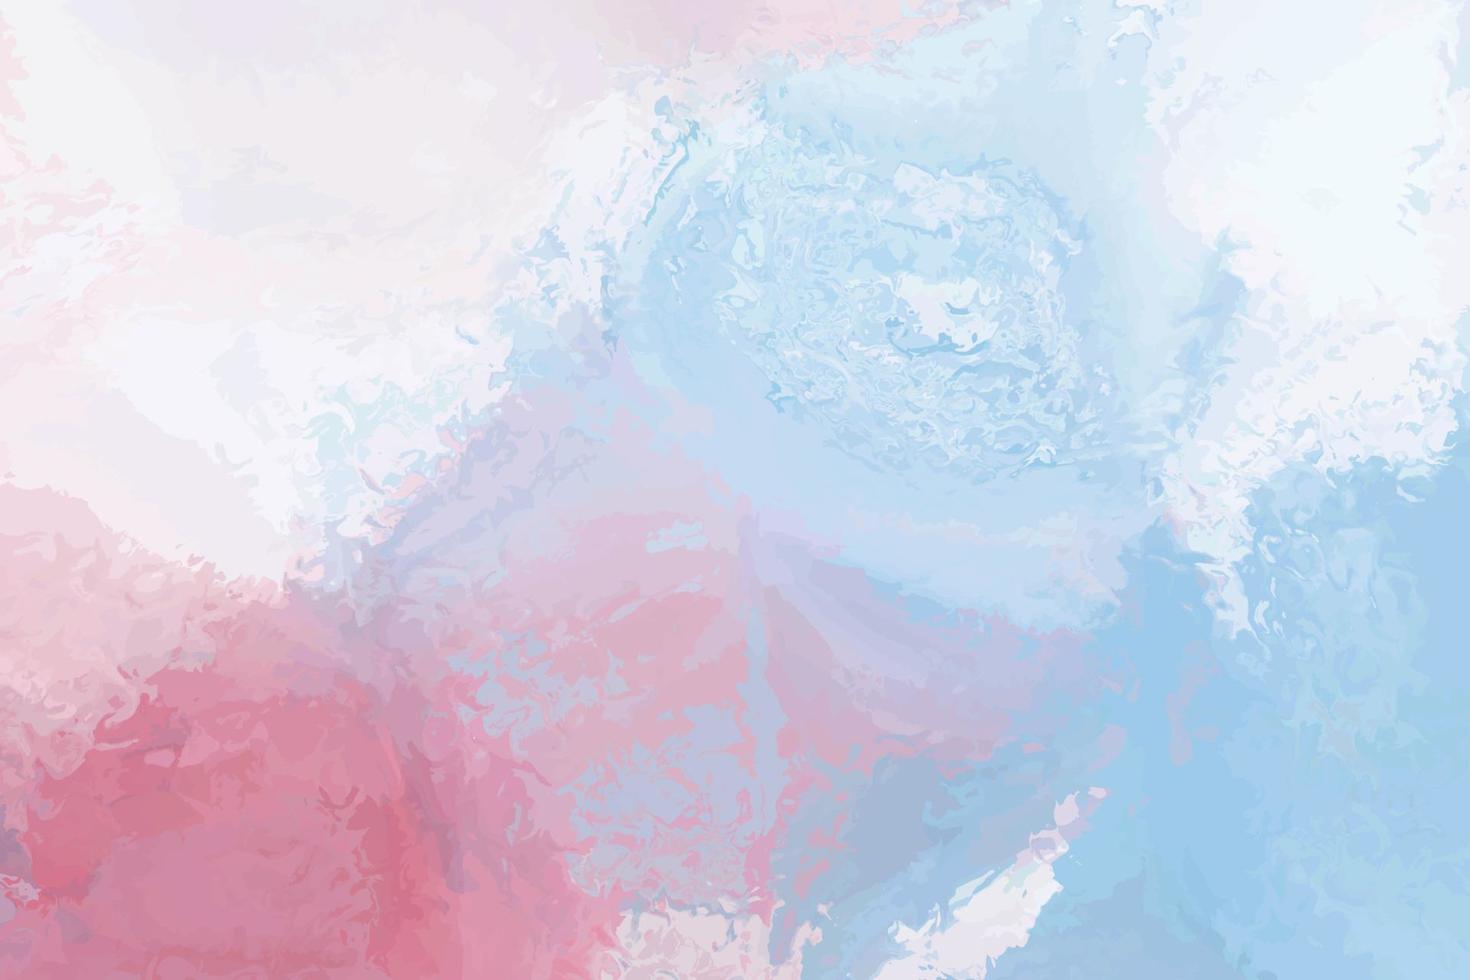 disegno del fondo di vettore della spruzzata del lavaggio bagnato dell'acquerello rosa pastello e blu